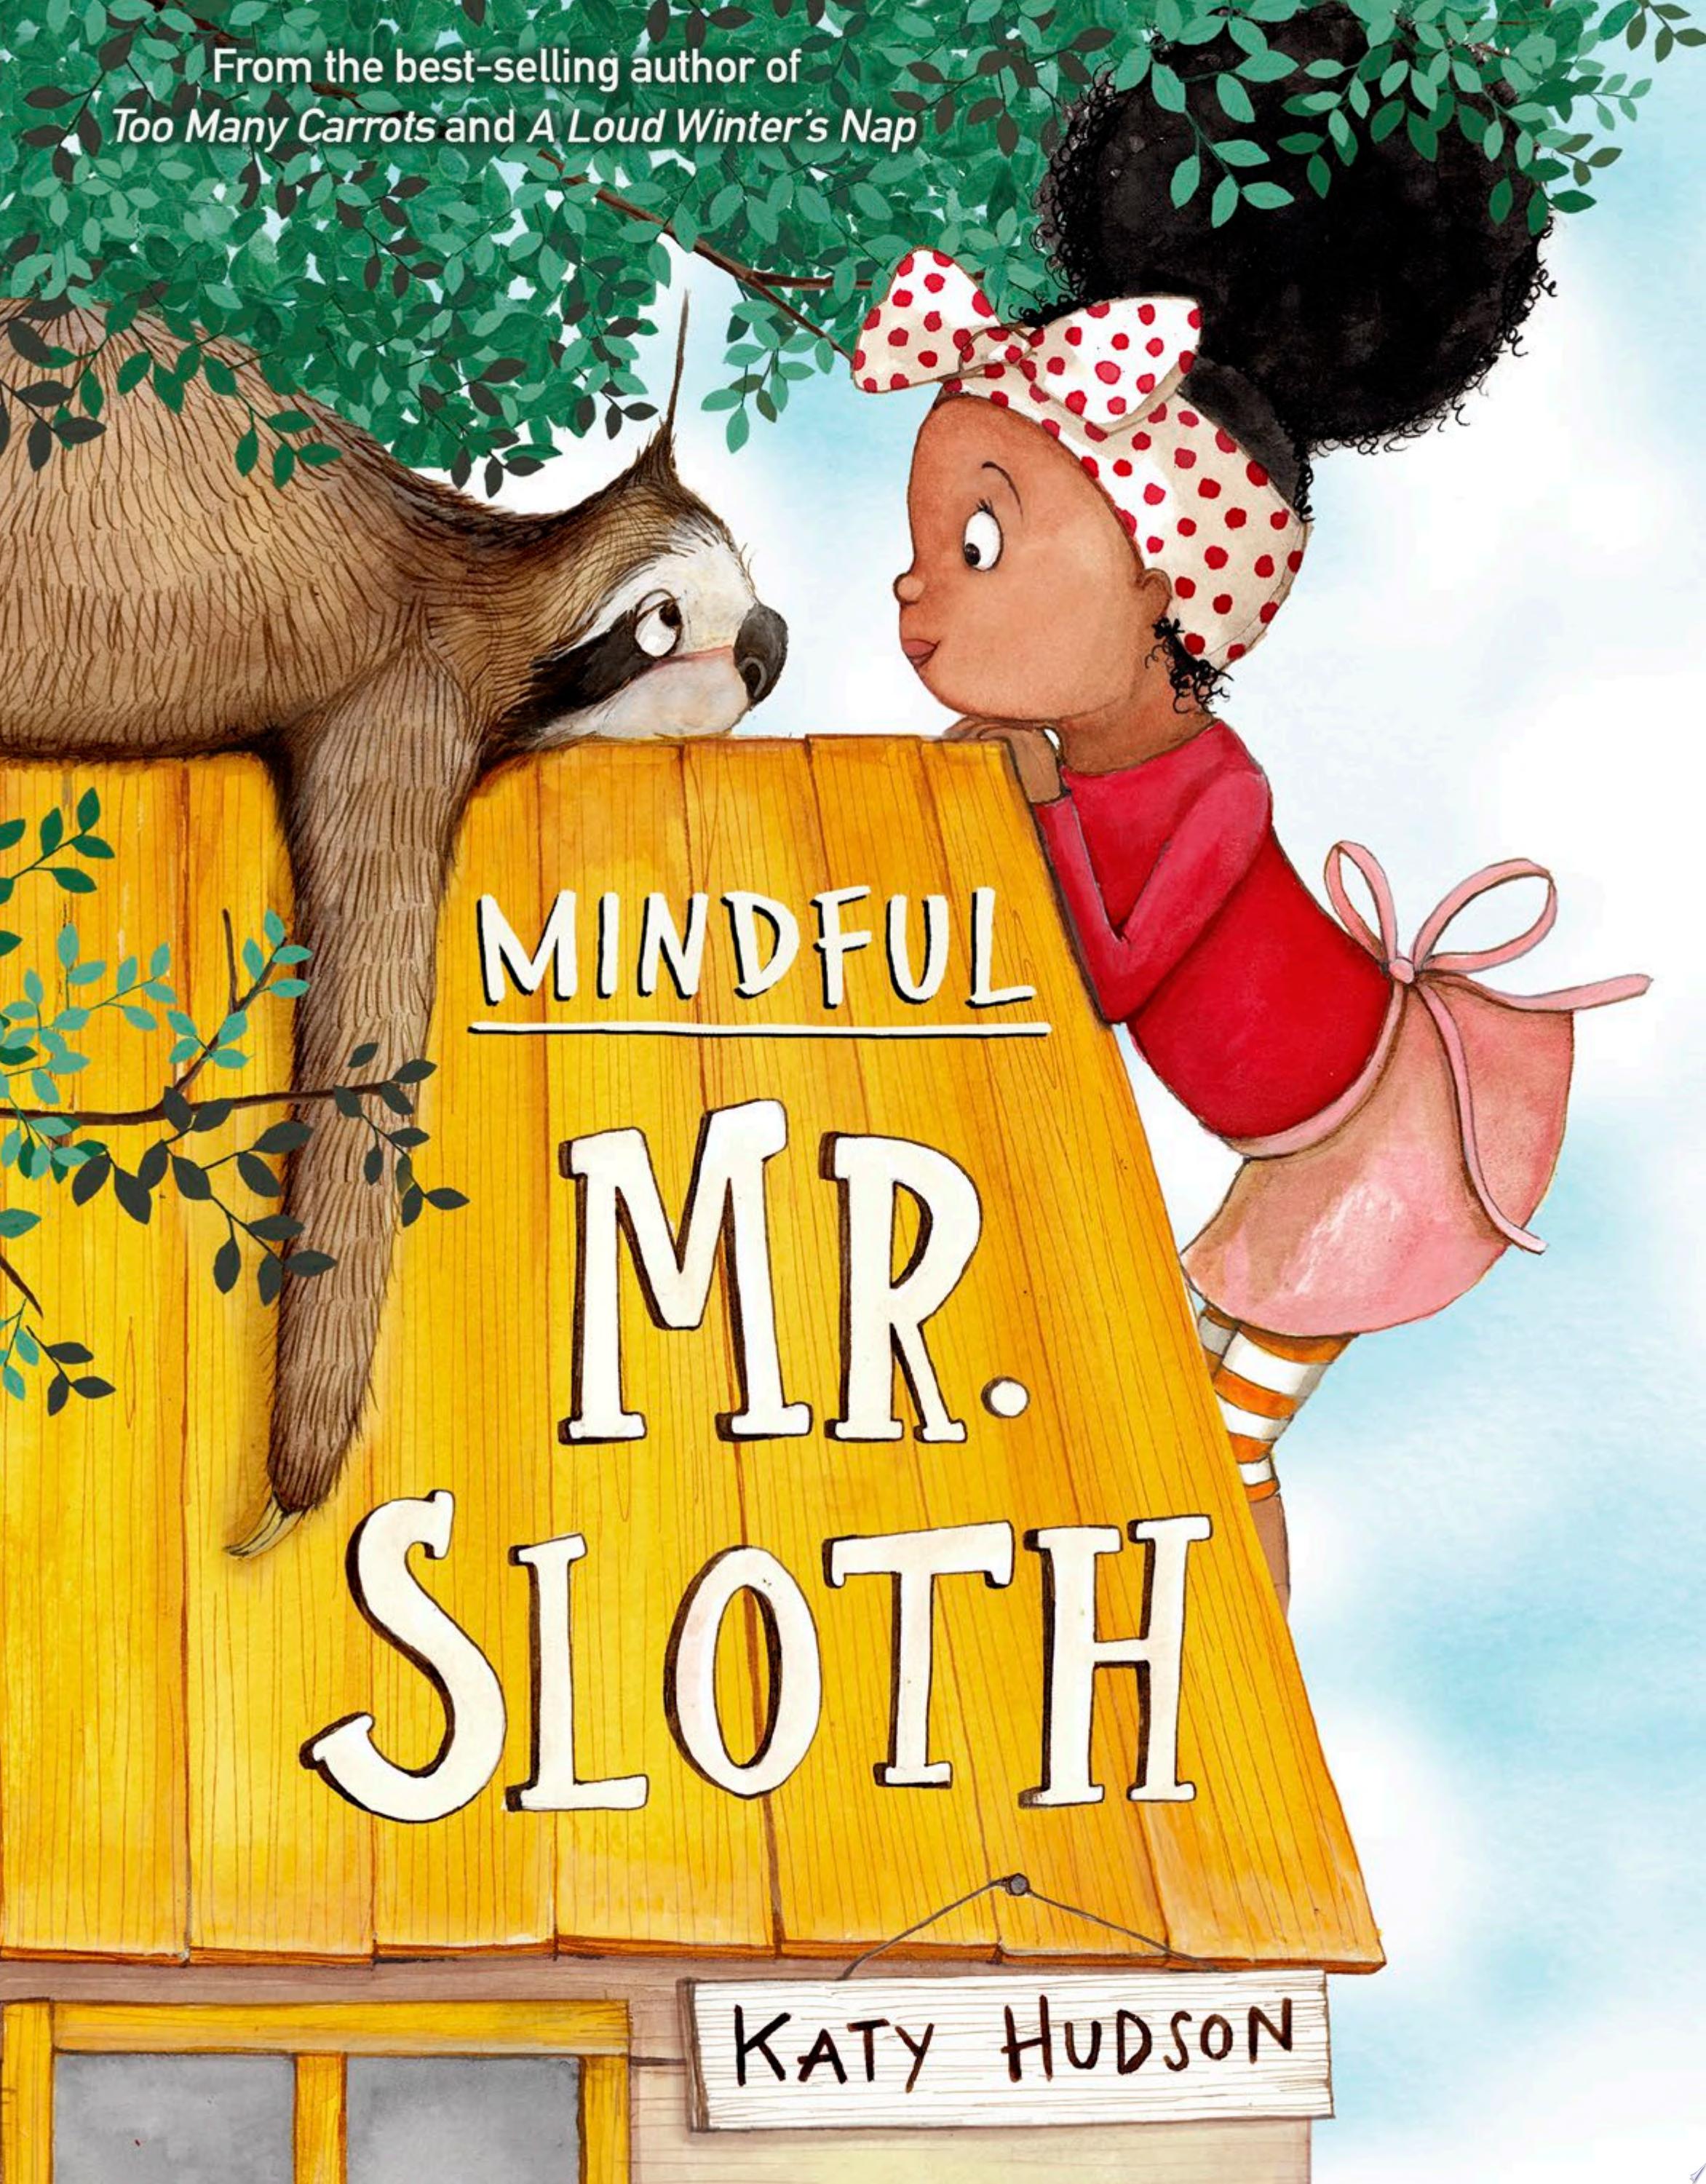 Image for "Mindful Mr. Sloth"